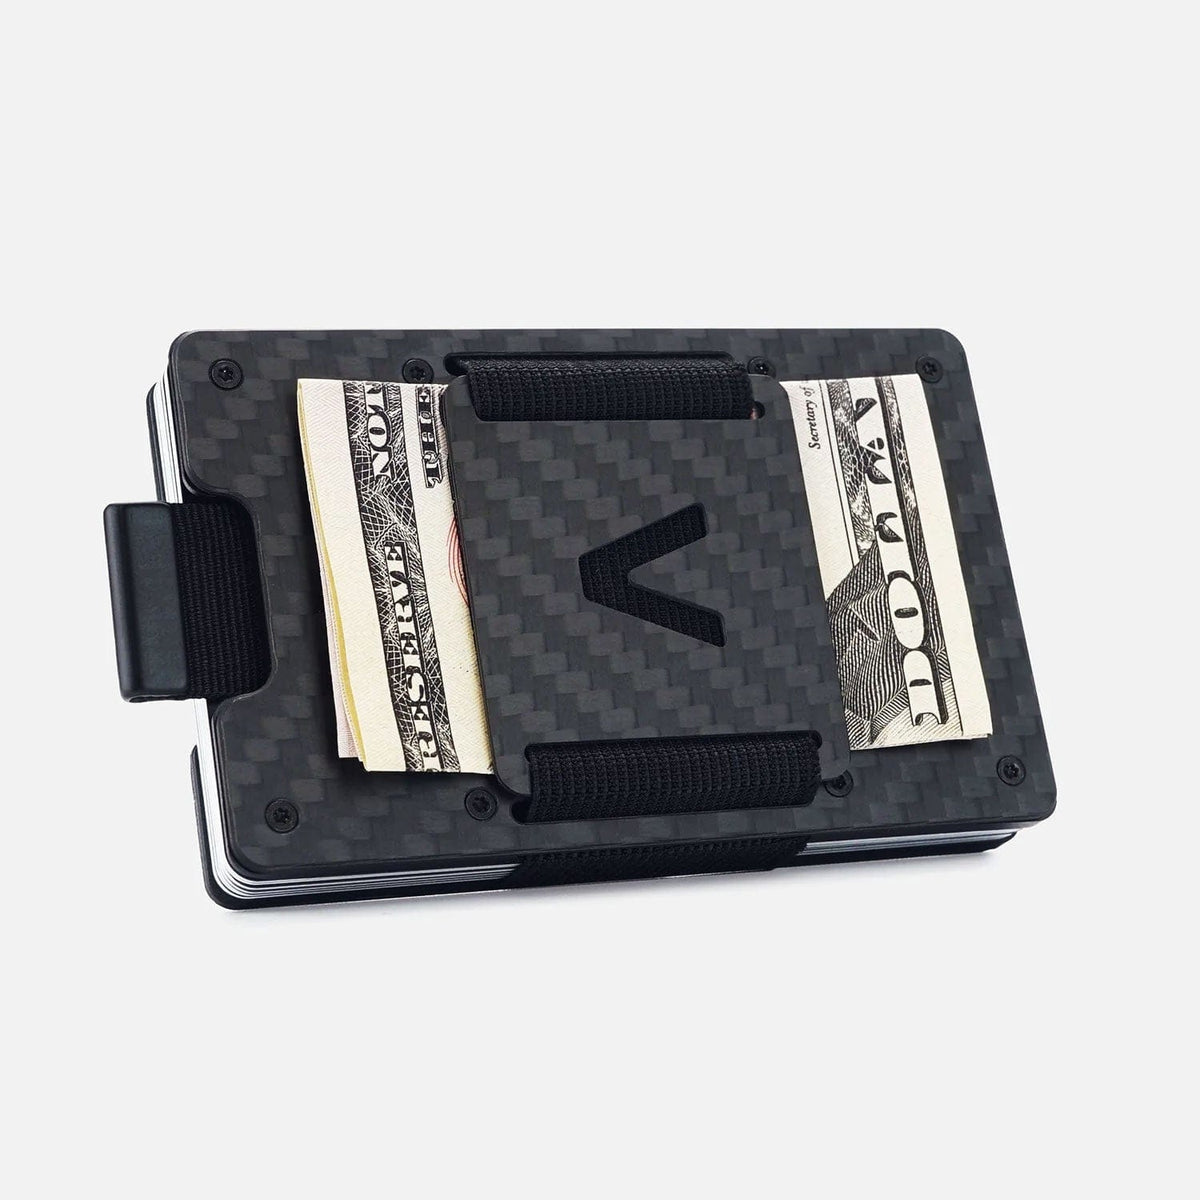 Wallets For Men - Smart wallet - Carbon Fiber Wallet - Slim Wallet